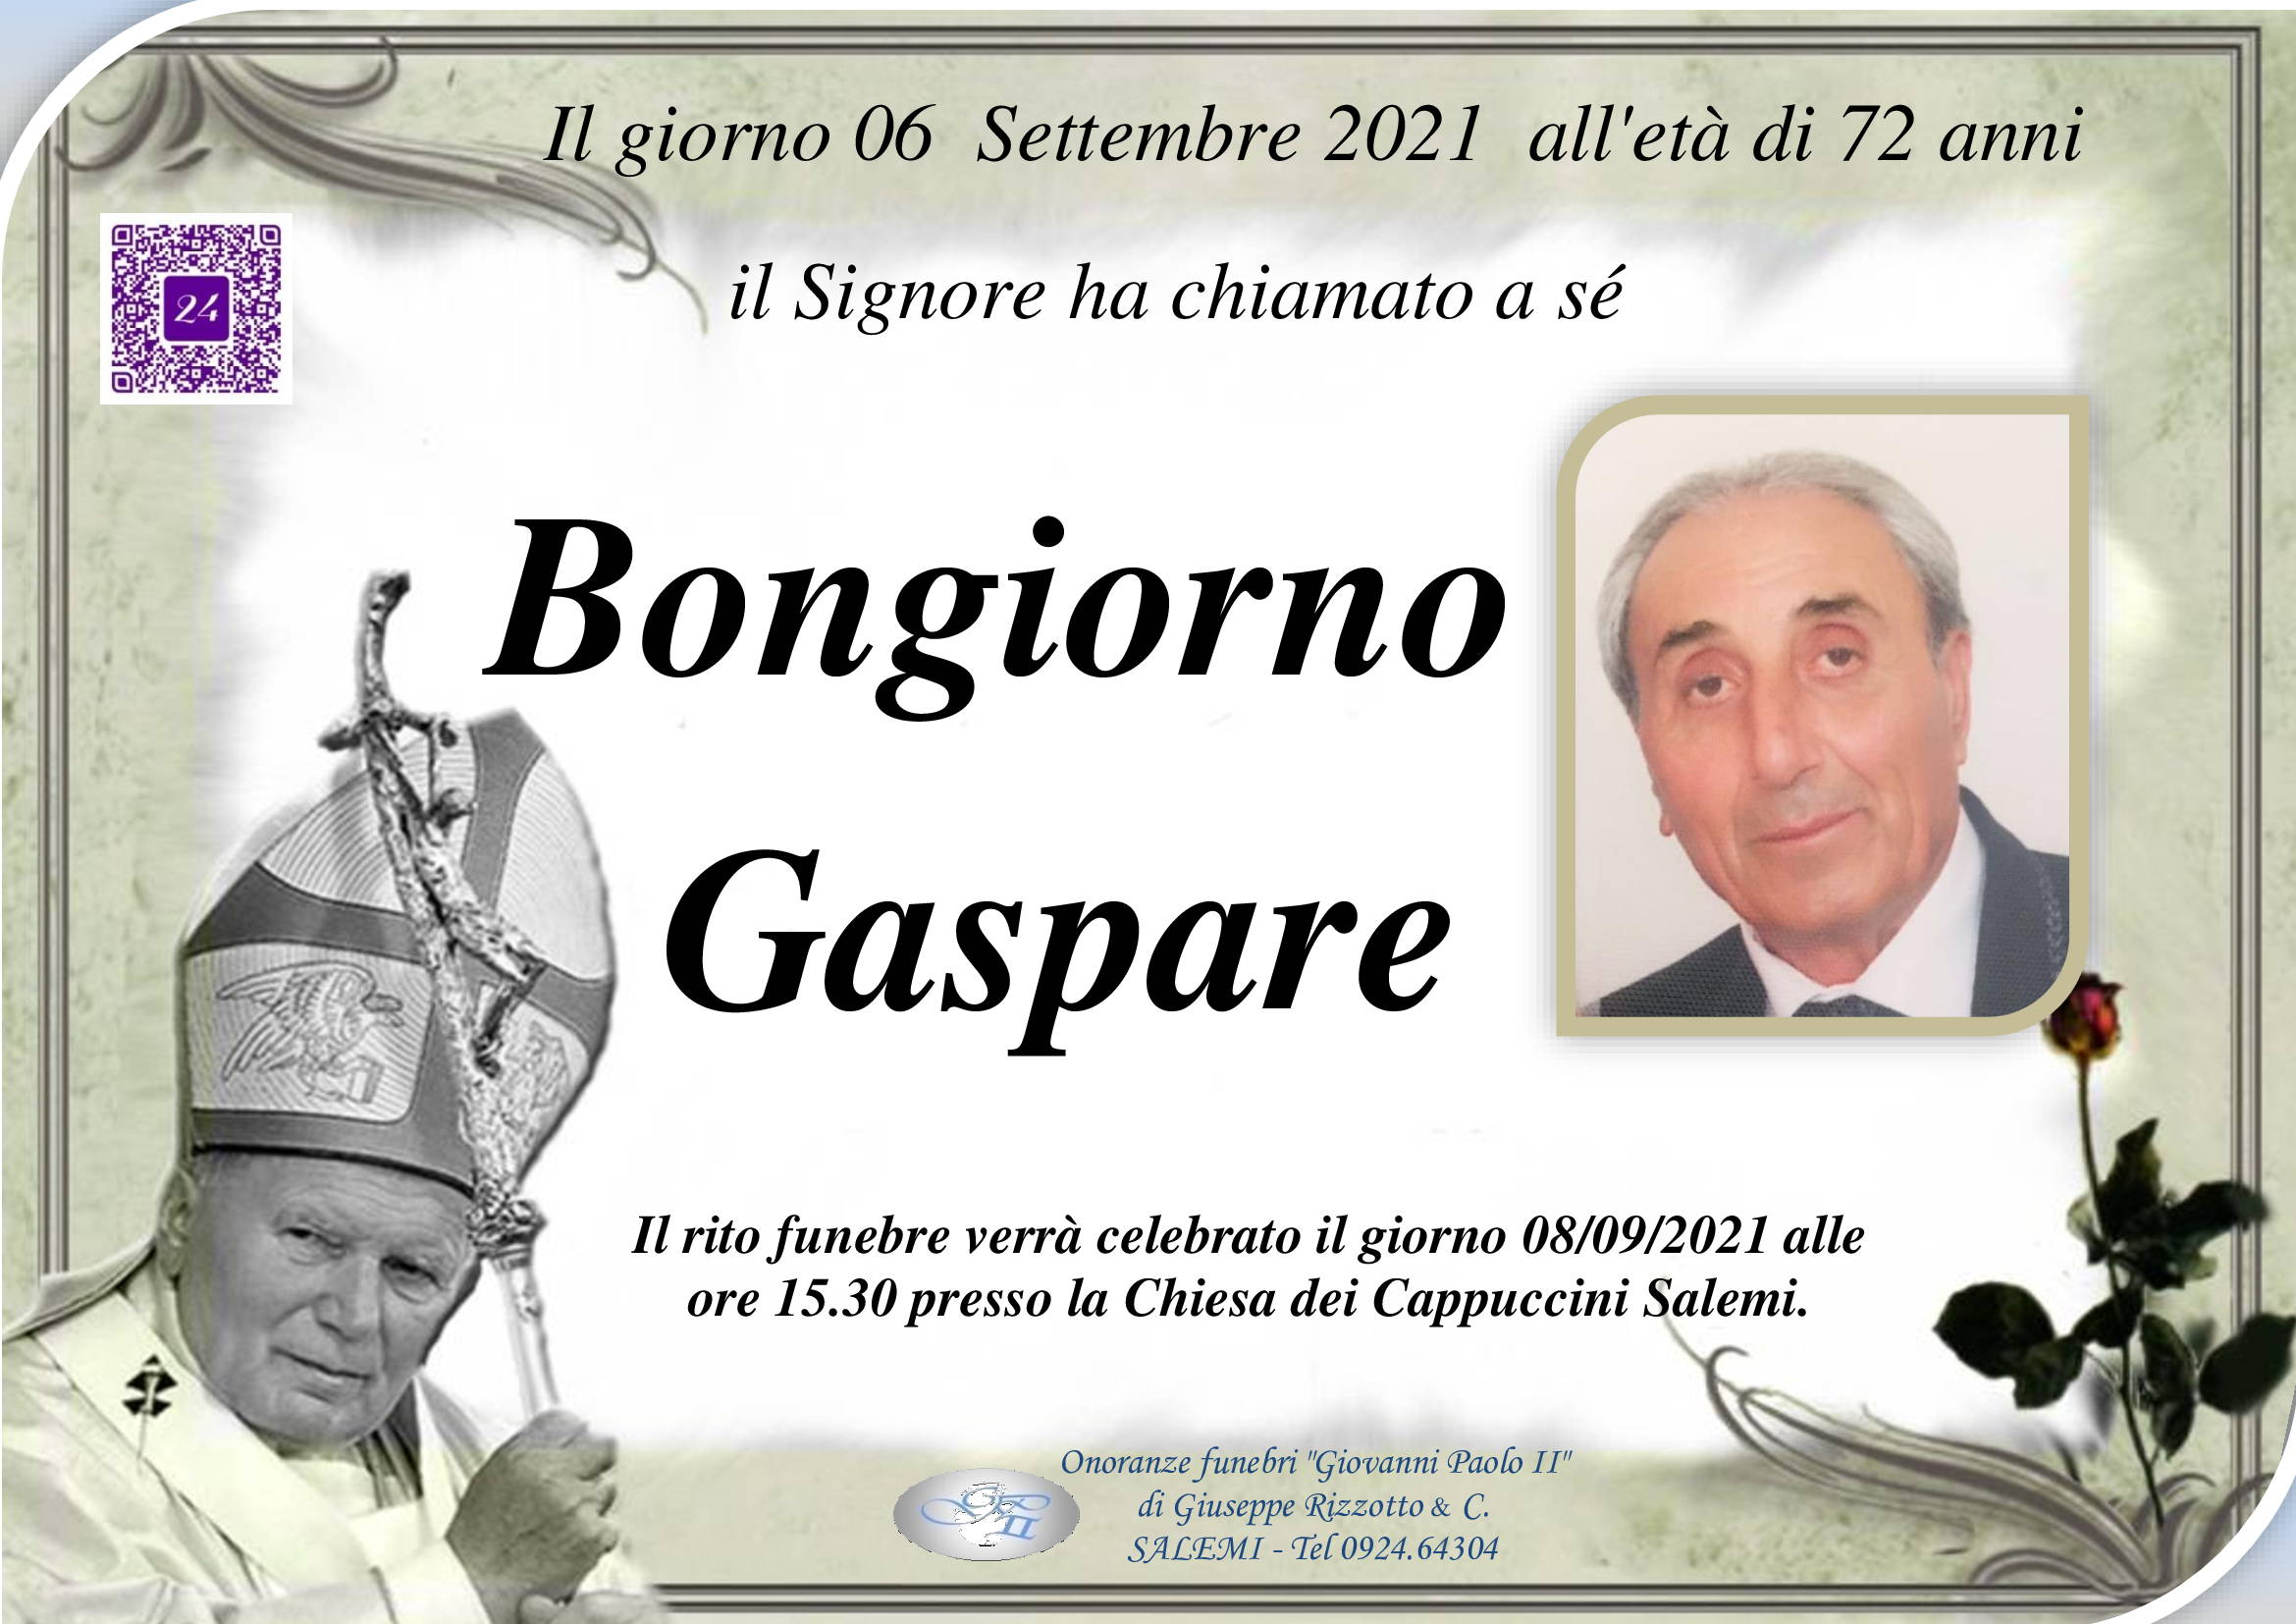 Gaspare Bongiorno